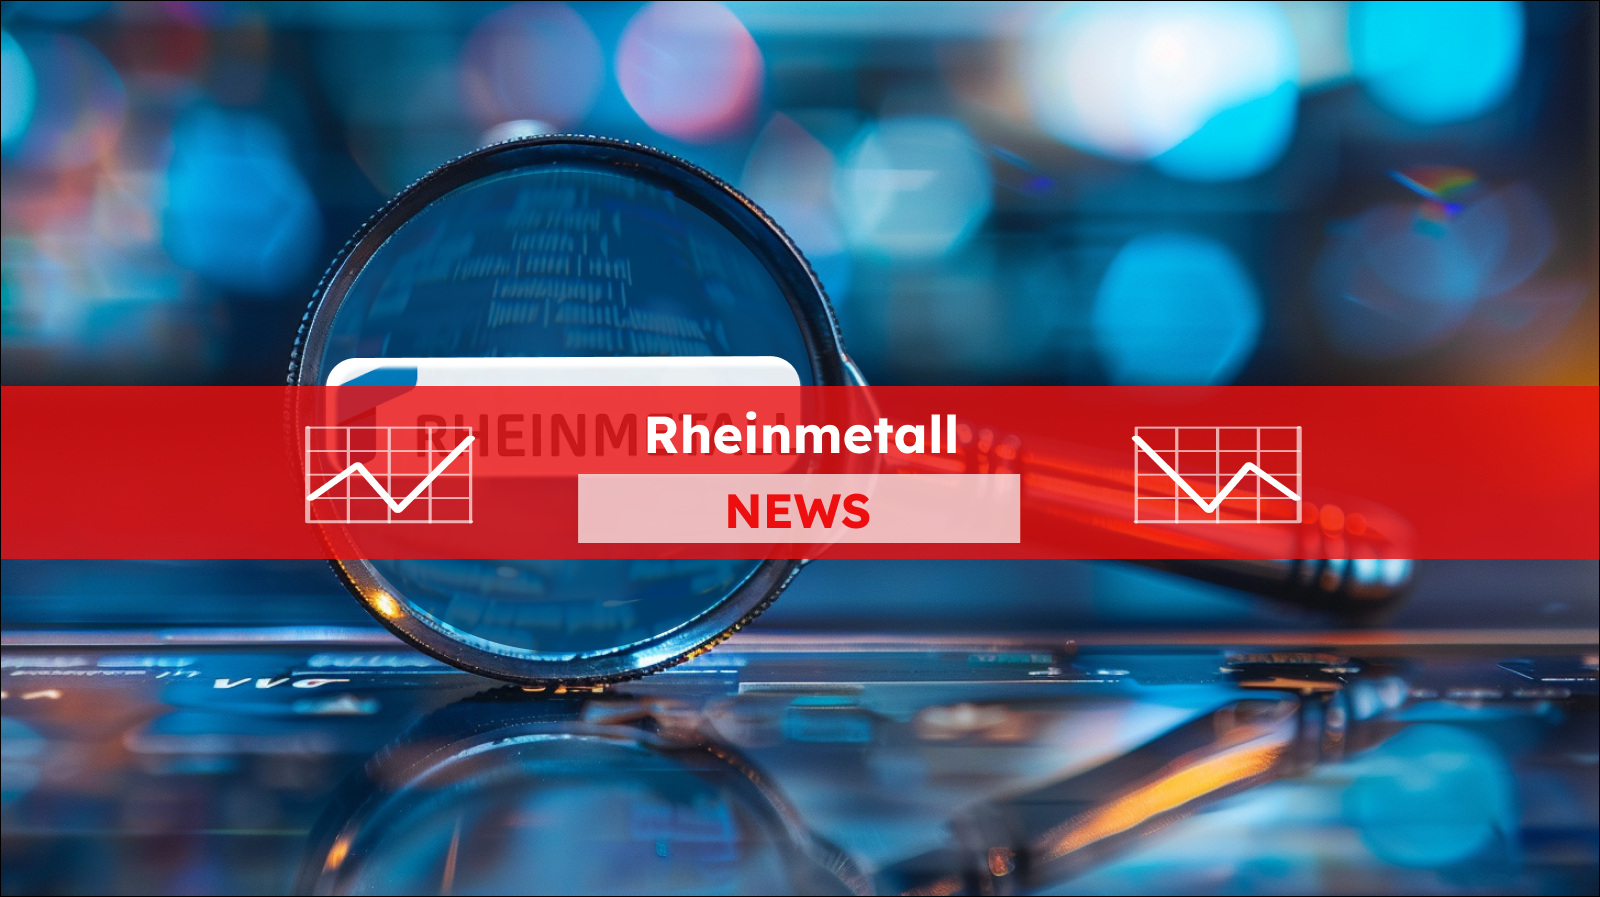 eine Lupe, die das Logo von RHEINMETALL vergrößert darstellt, vor einem unscharfen, leuchtend bunten Hintergrund, mit einem Rheinmetall NEWS Banner